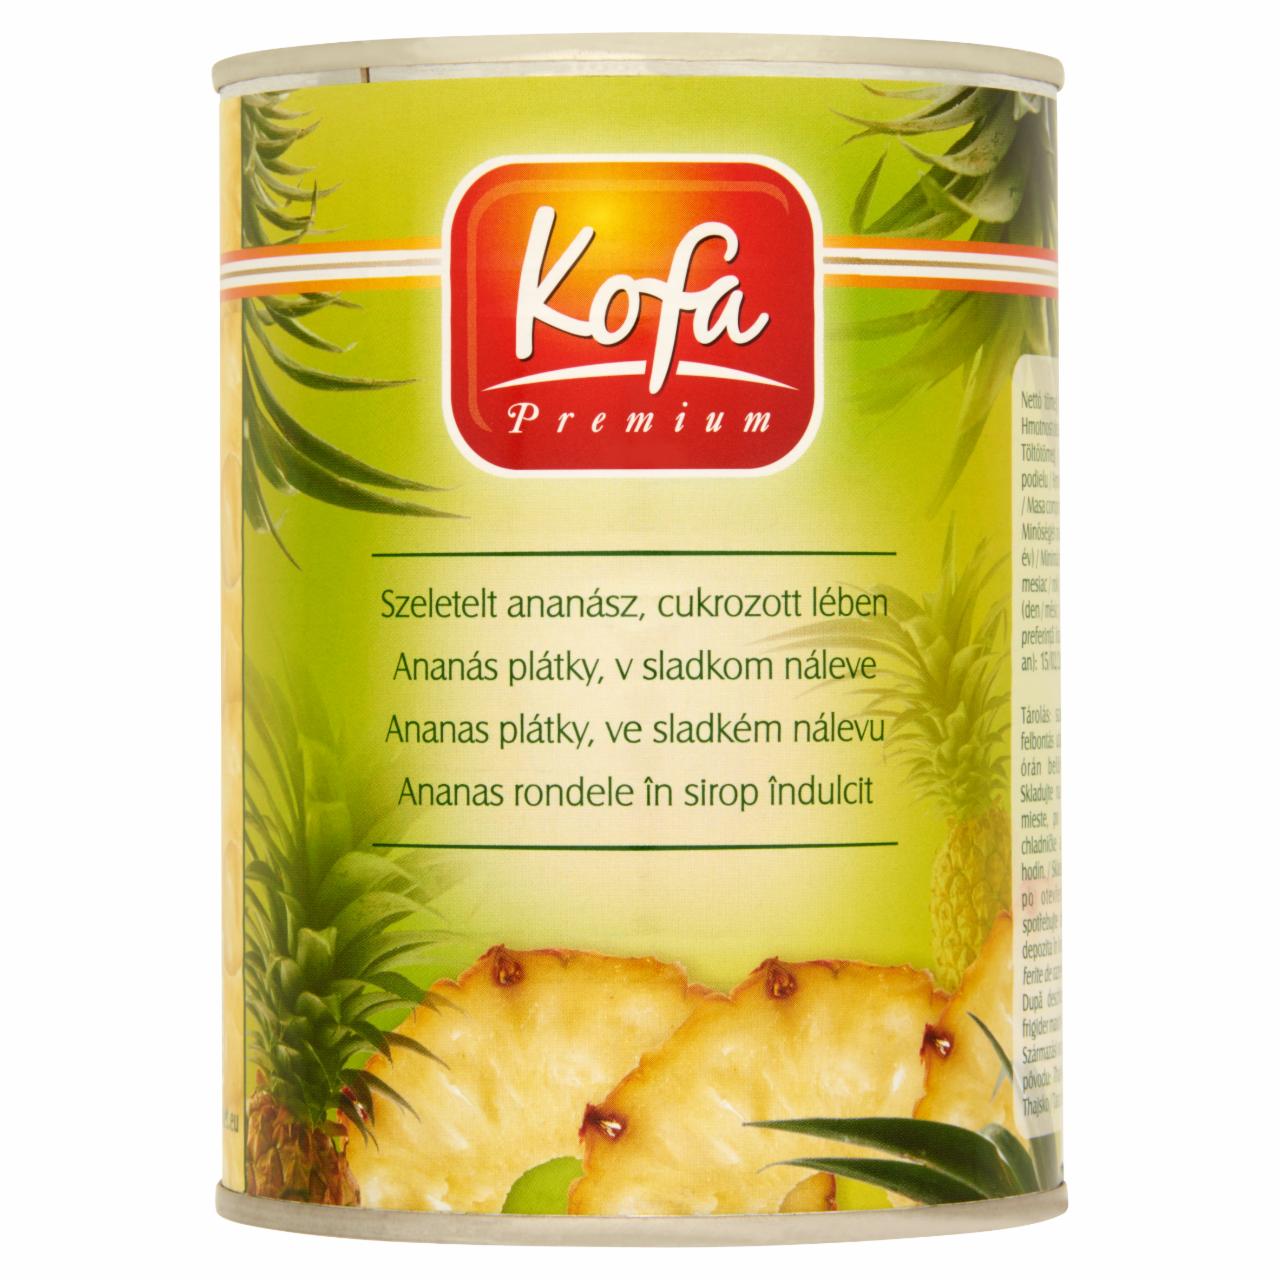 Képek - Kofa Premium szeletelt ananász cukrozott lében 565 g